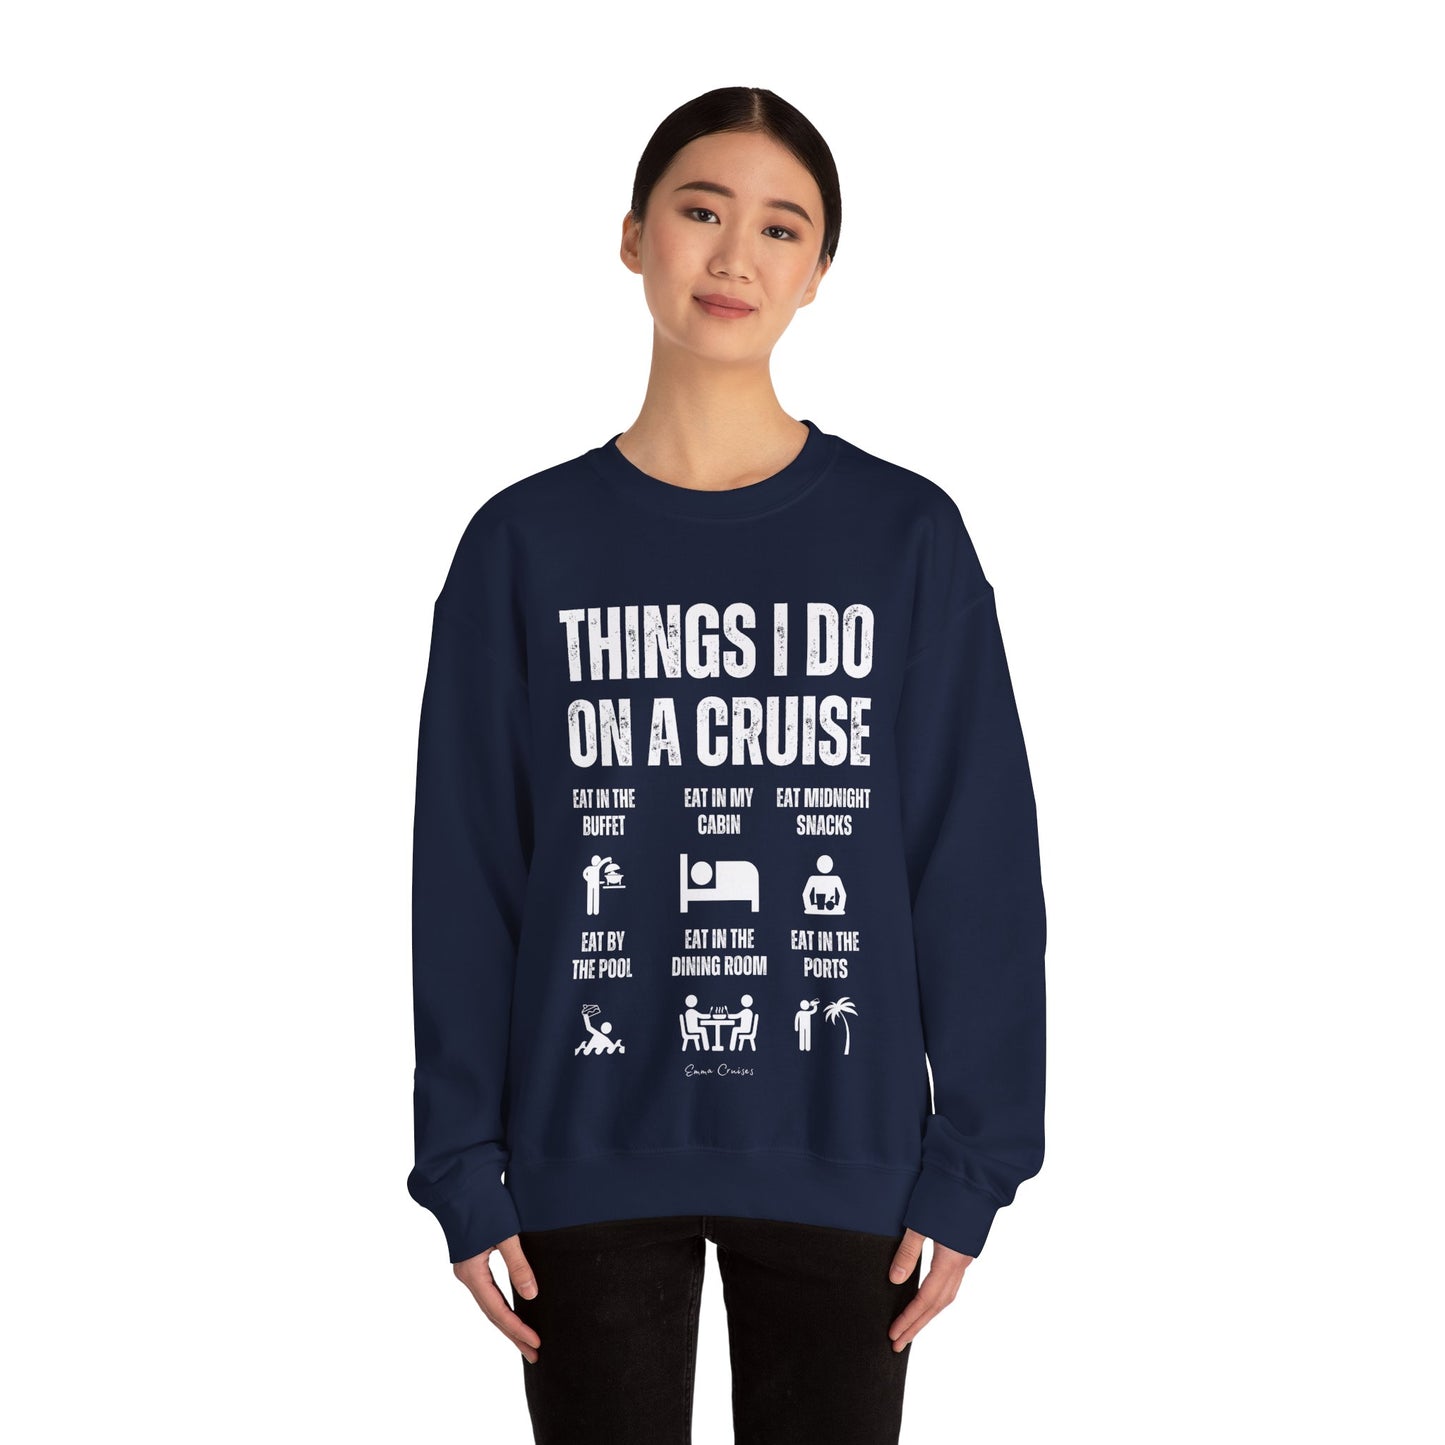 Things I Do on a Cruise - UNISEX Crewneck Sweatshirt